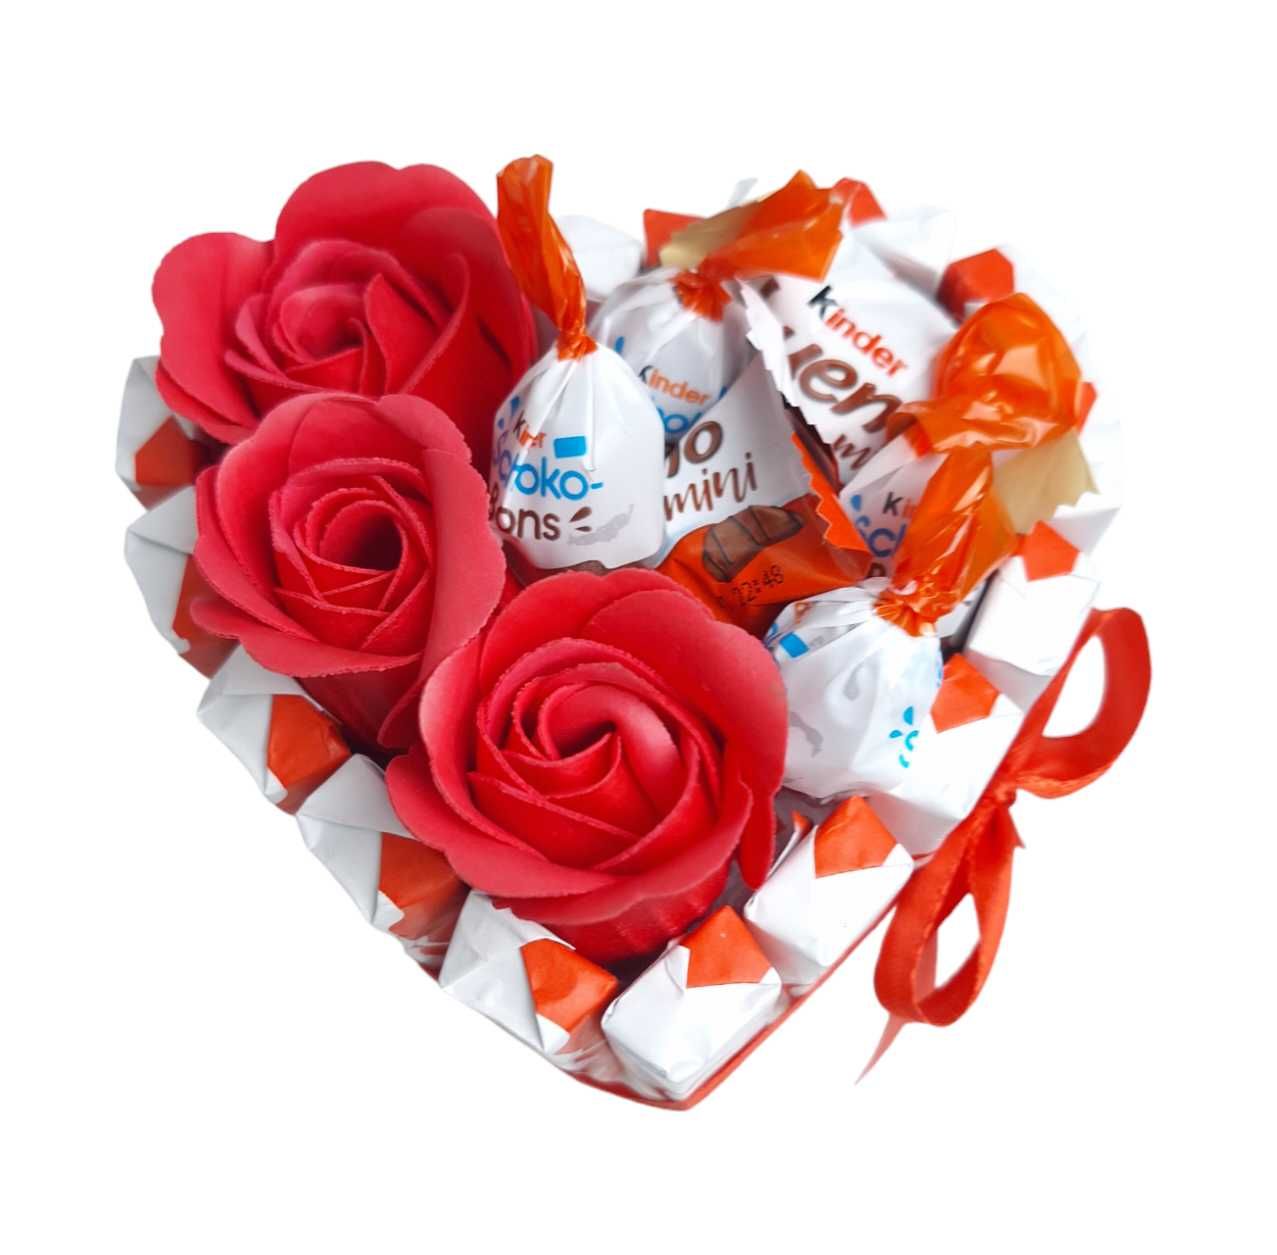 Serce Dzien kobiet urodziny kwiaty kinder box zestaw prezentowy 10 cm